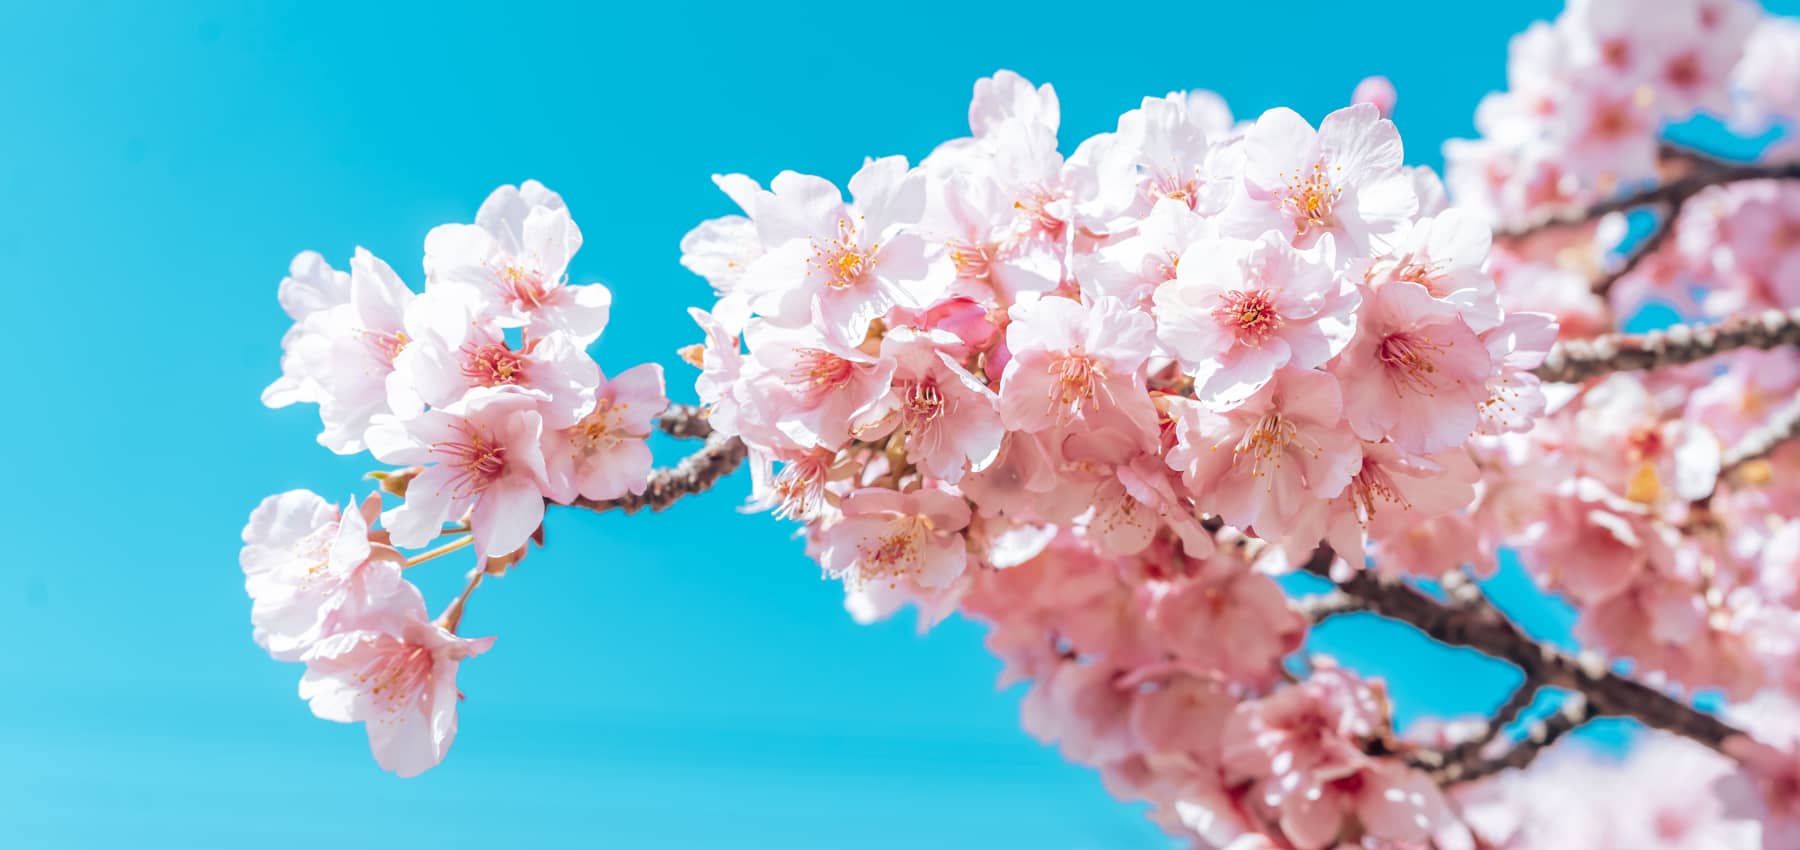 Todo lo que necesitas sobre Sakura – los cerezos en flor japoneses